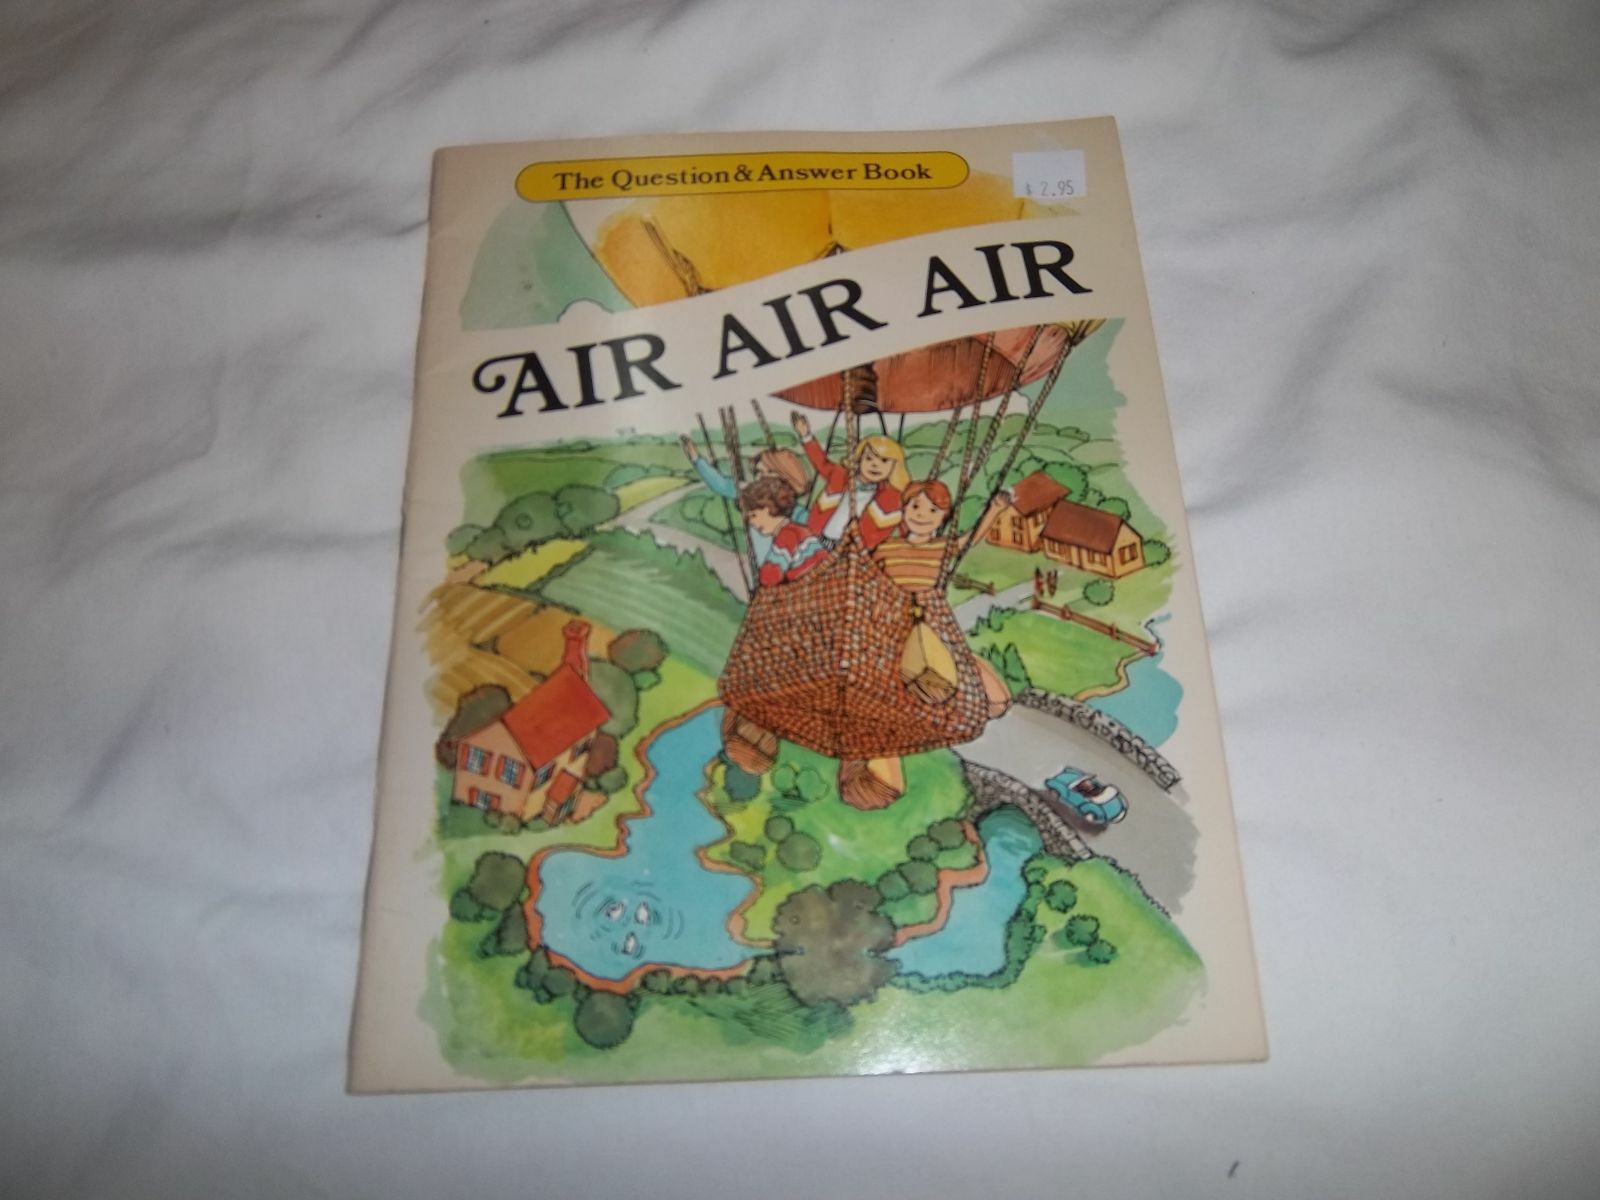 AIR, AIR, AIR-TH;E QUESTION AND BOOK PAPER BACK